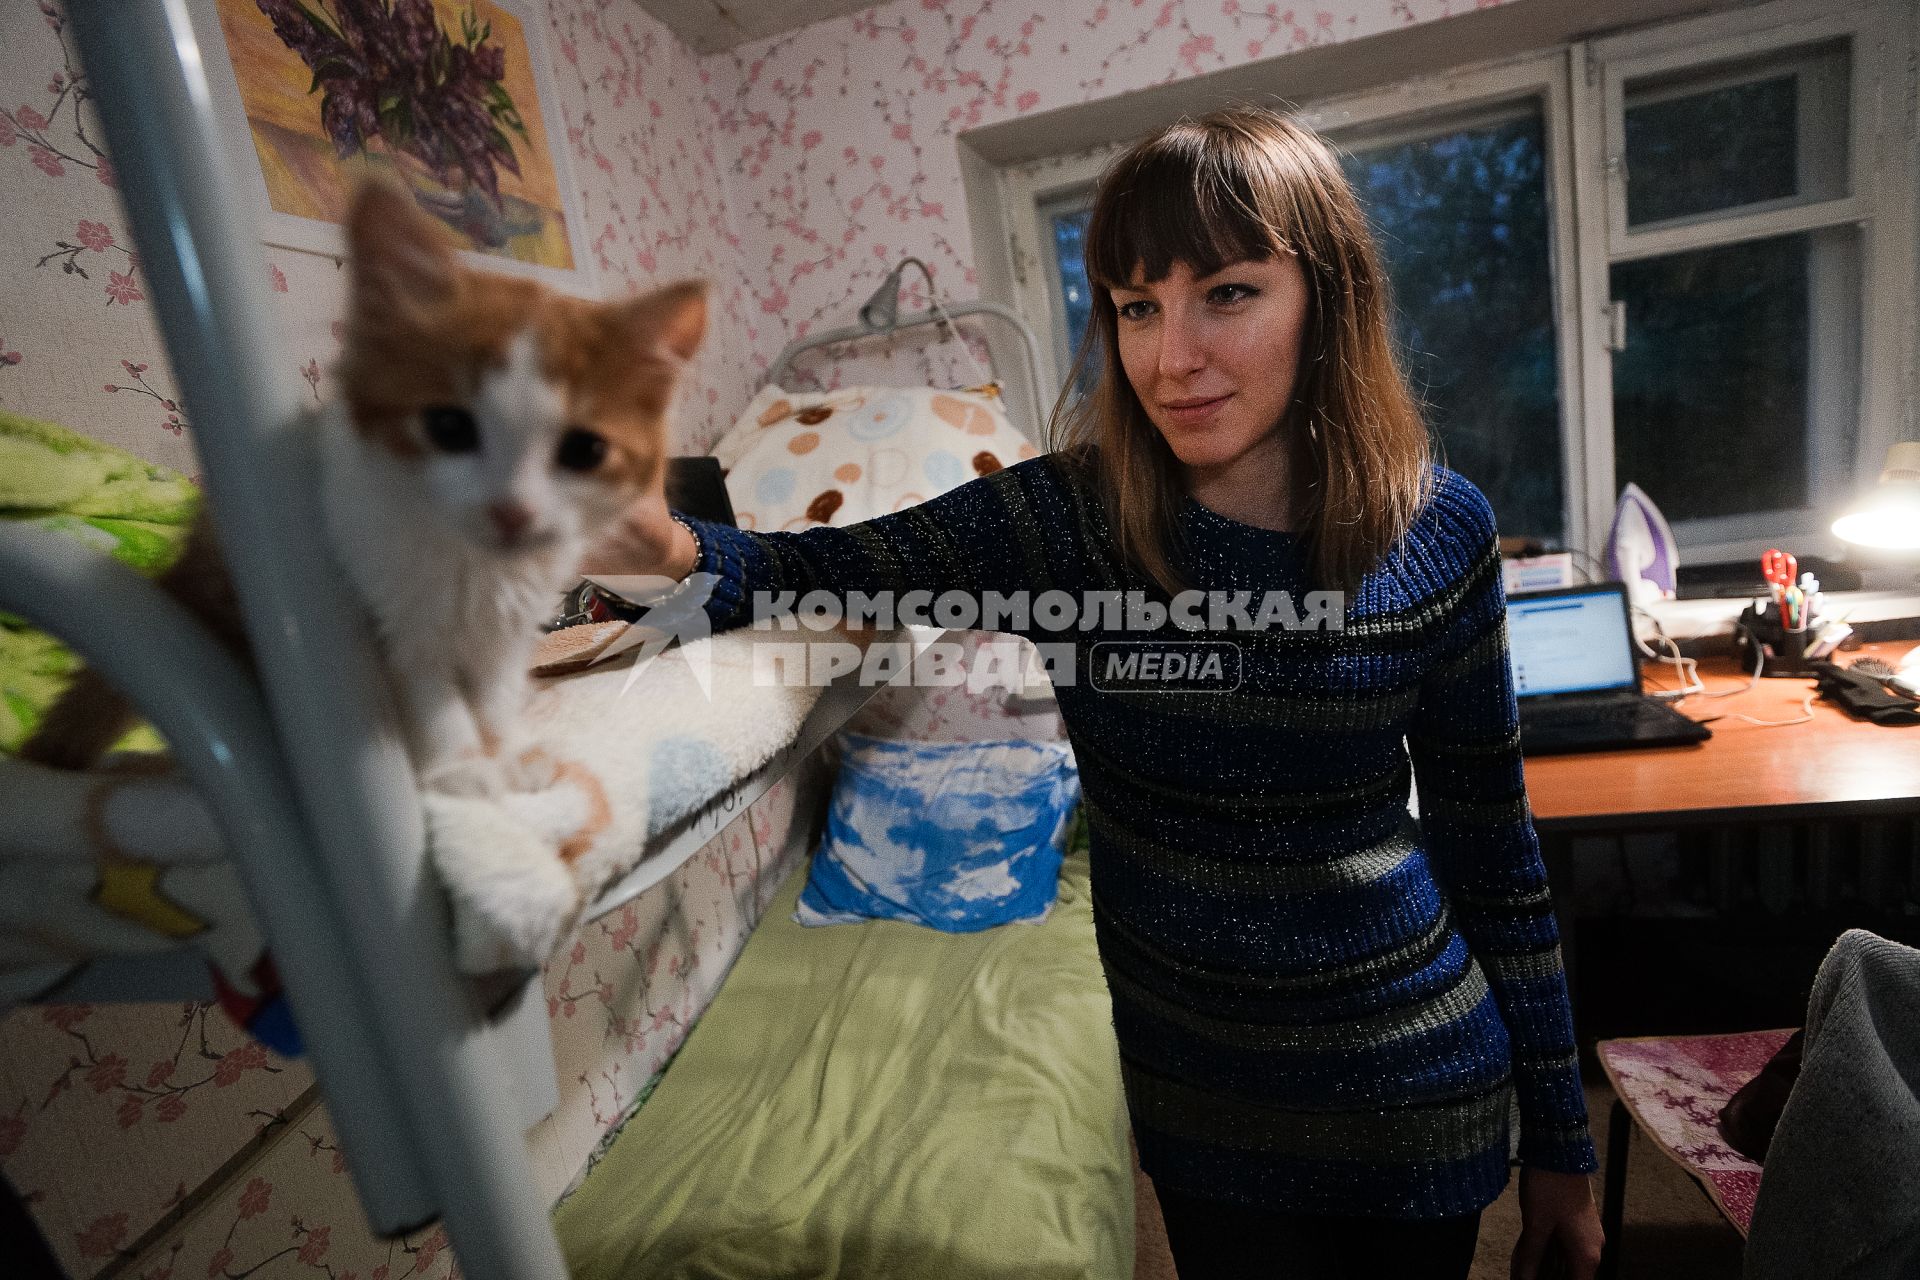 Студенческое общежитие в Екатеринбурге. На снимке: девушка гладит кота сидящего на втором ярусе кровати.